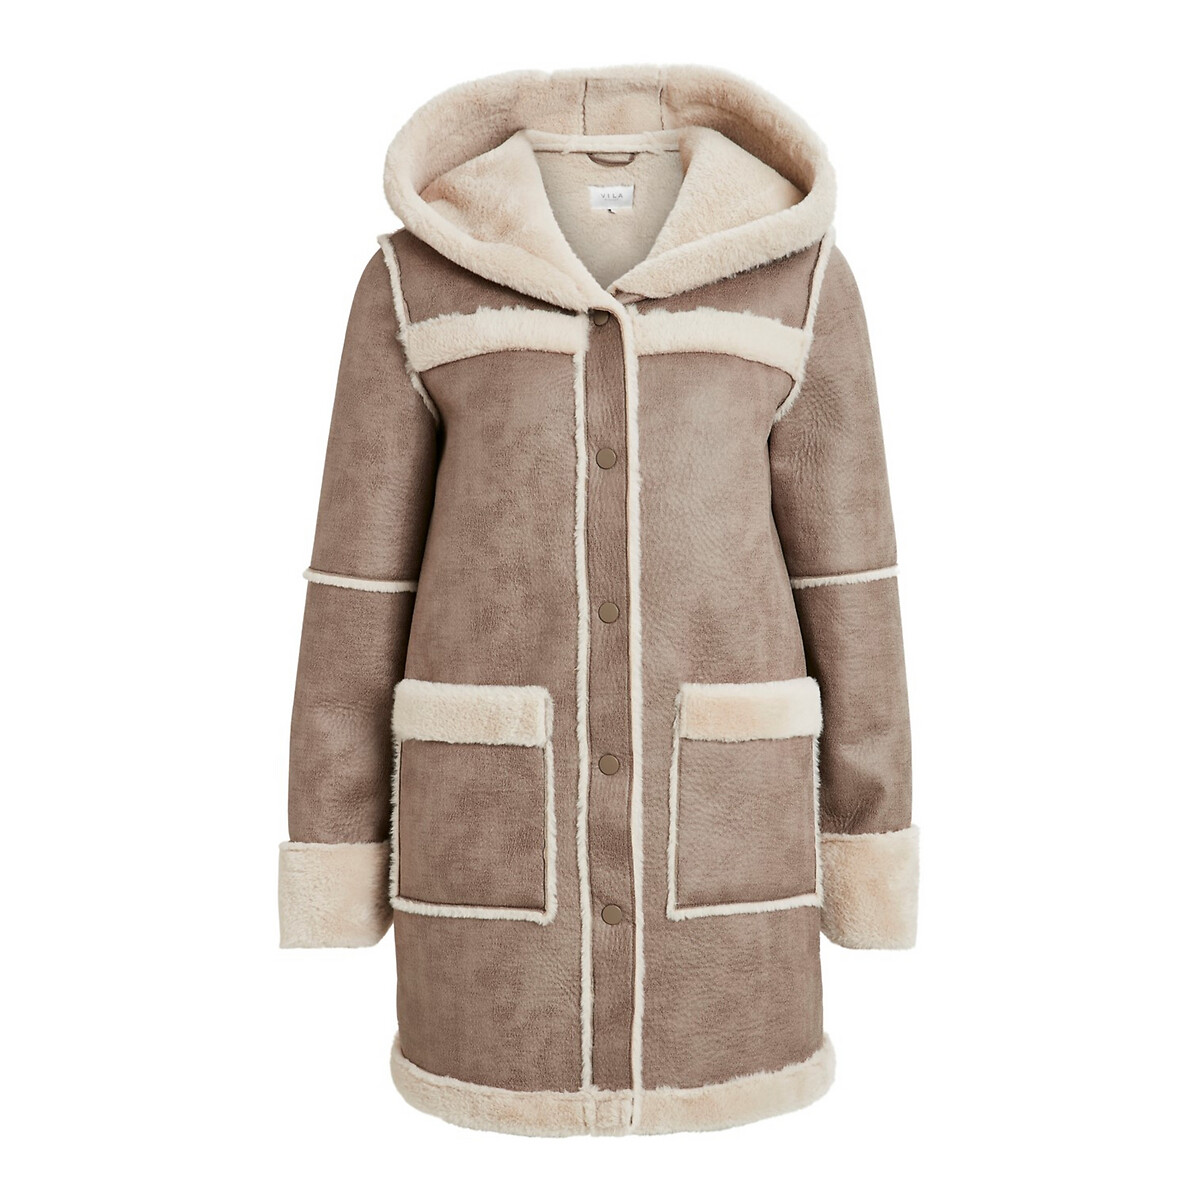 Пальто La Redoute С капюшоном под кожу мутон 34 (FR) - 40 (RUS) каштановый, размер 34 (FR) - 40 (RUS) С капюшоном под кожу мутон 34 (FR) - 40 (RUS) каштановый - фото 1